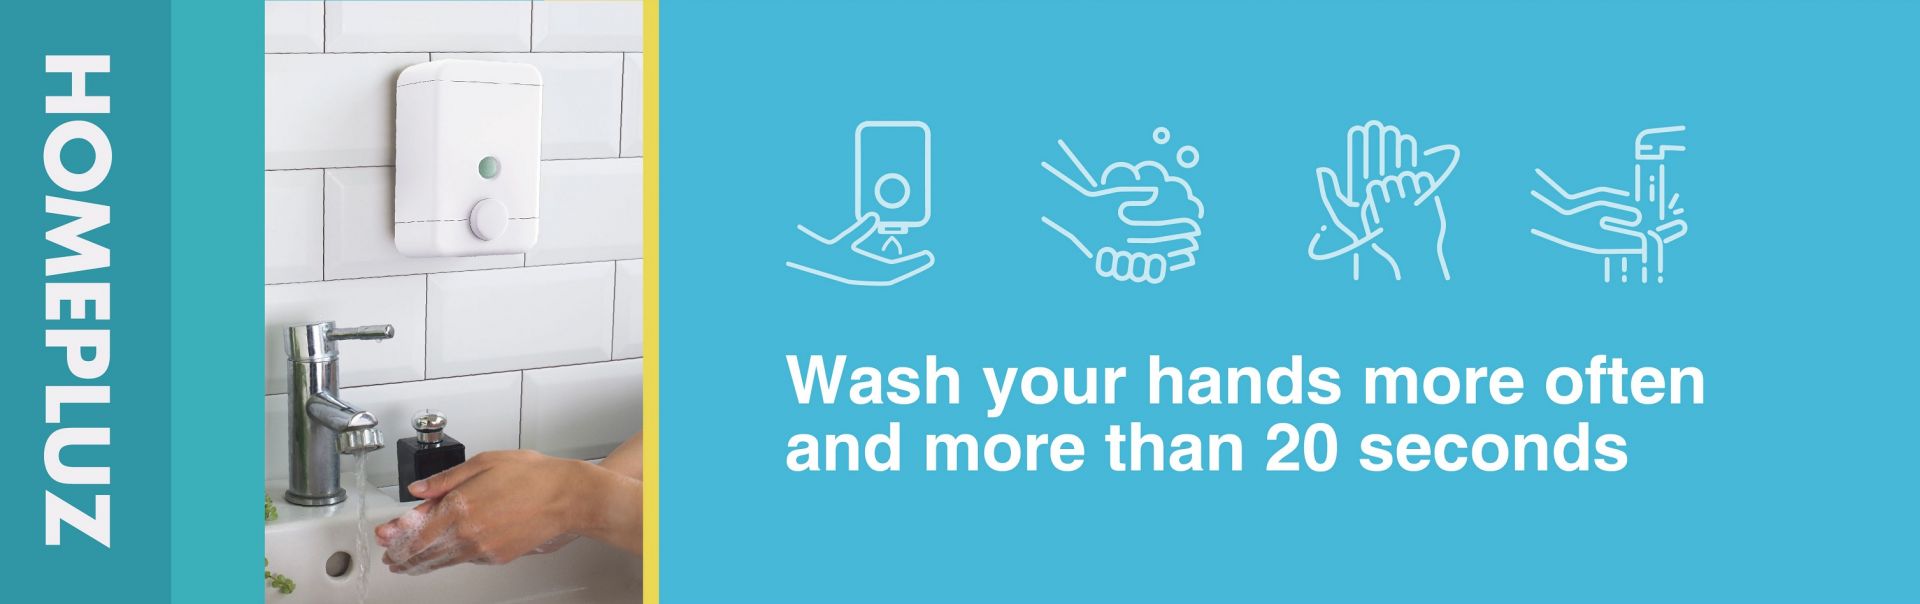 바이러스로부터 멀리하려면 손 씻기가 필요합니다.